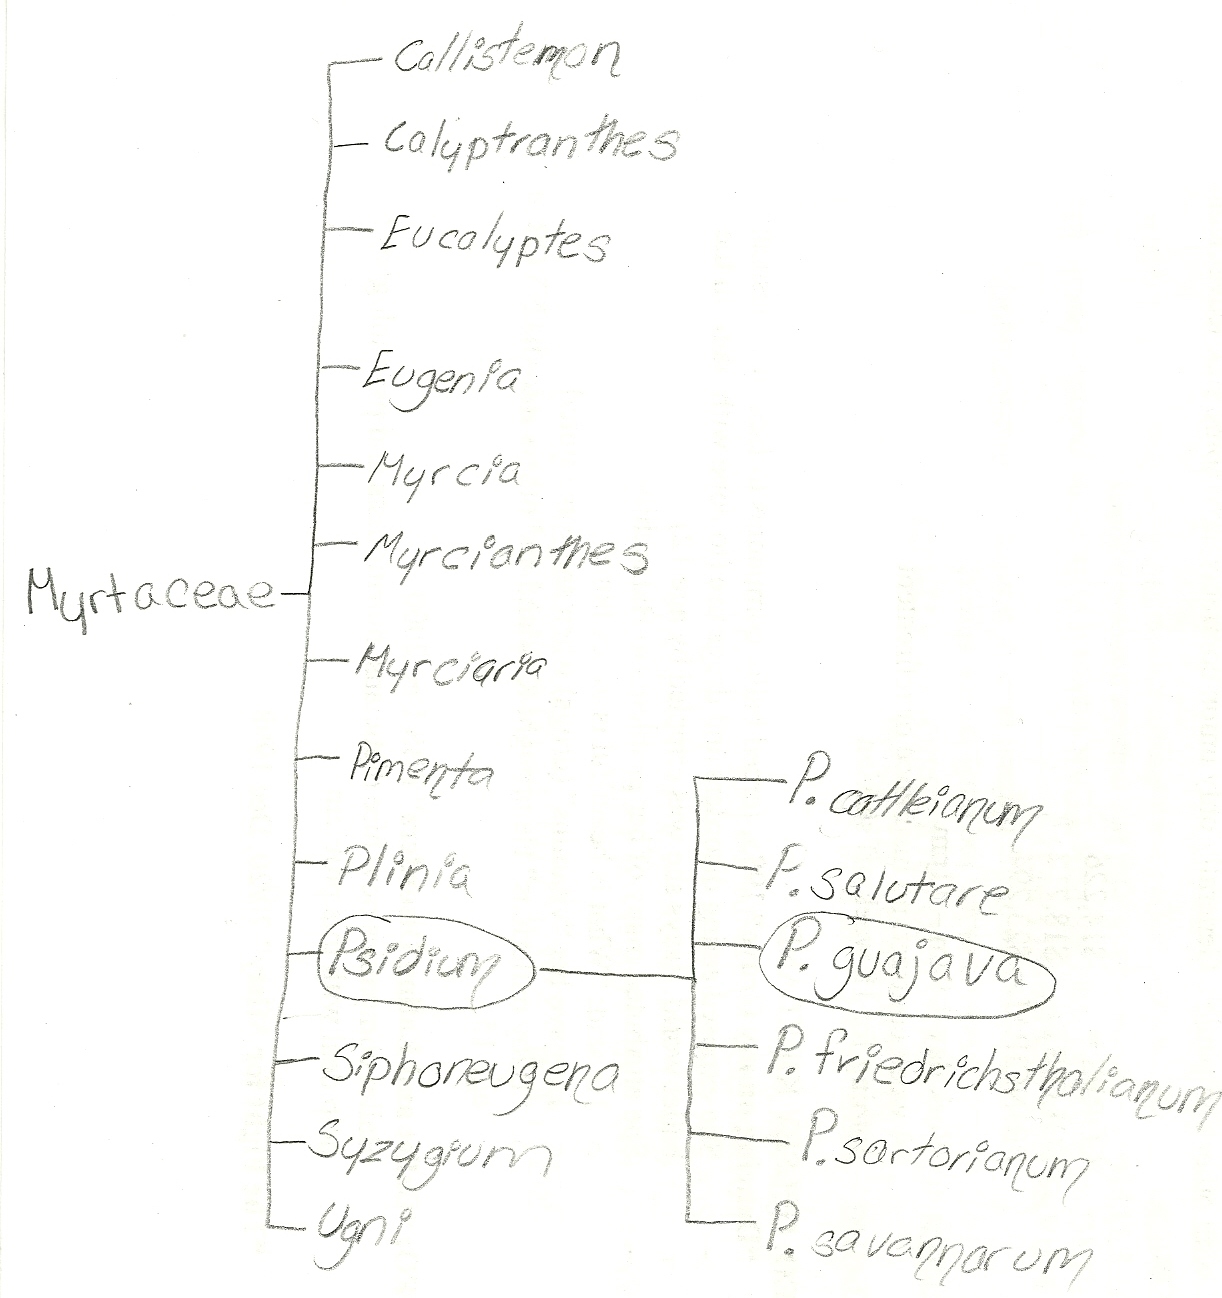 Phylogeny of P. guajava